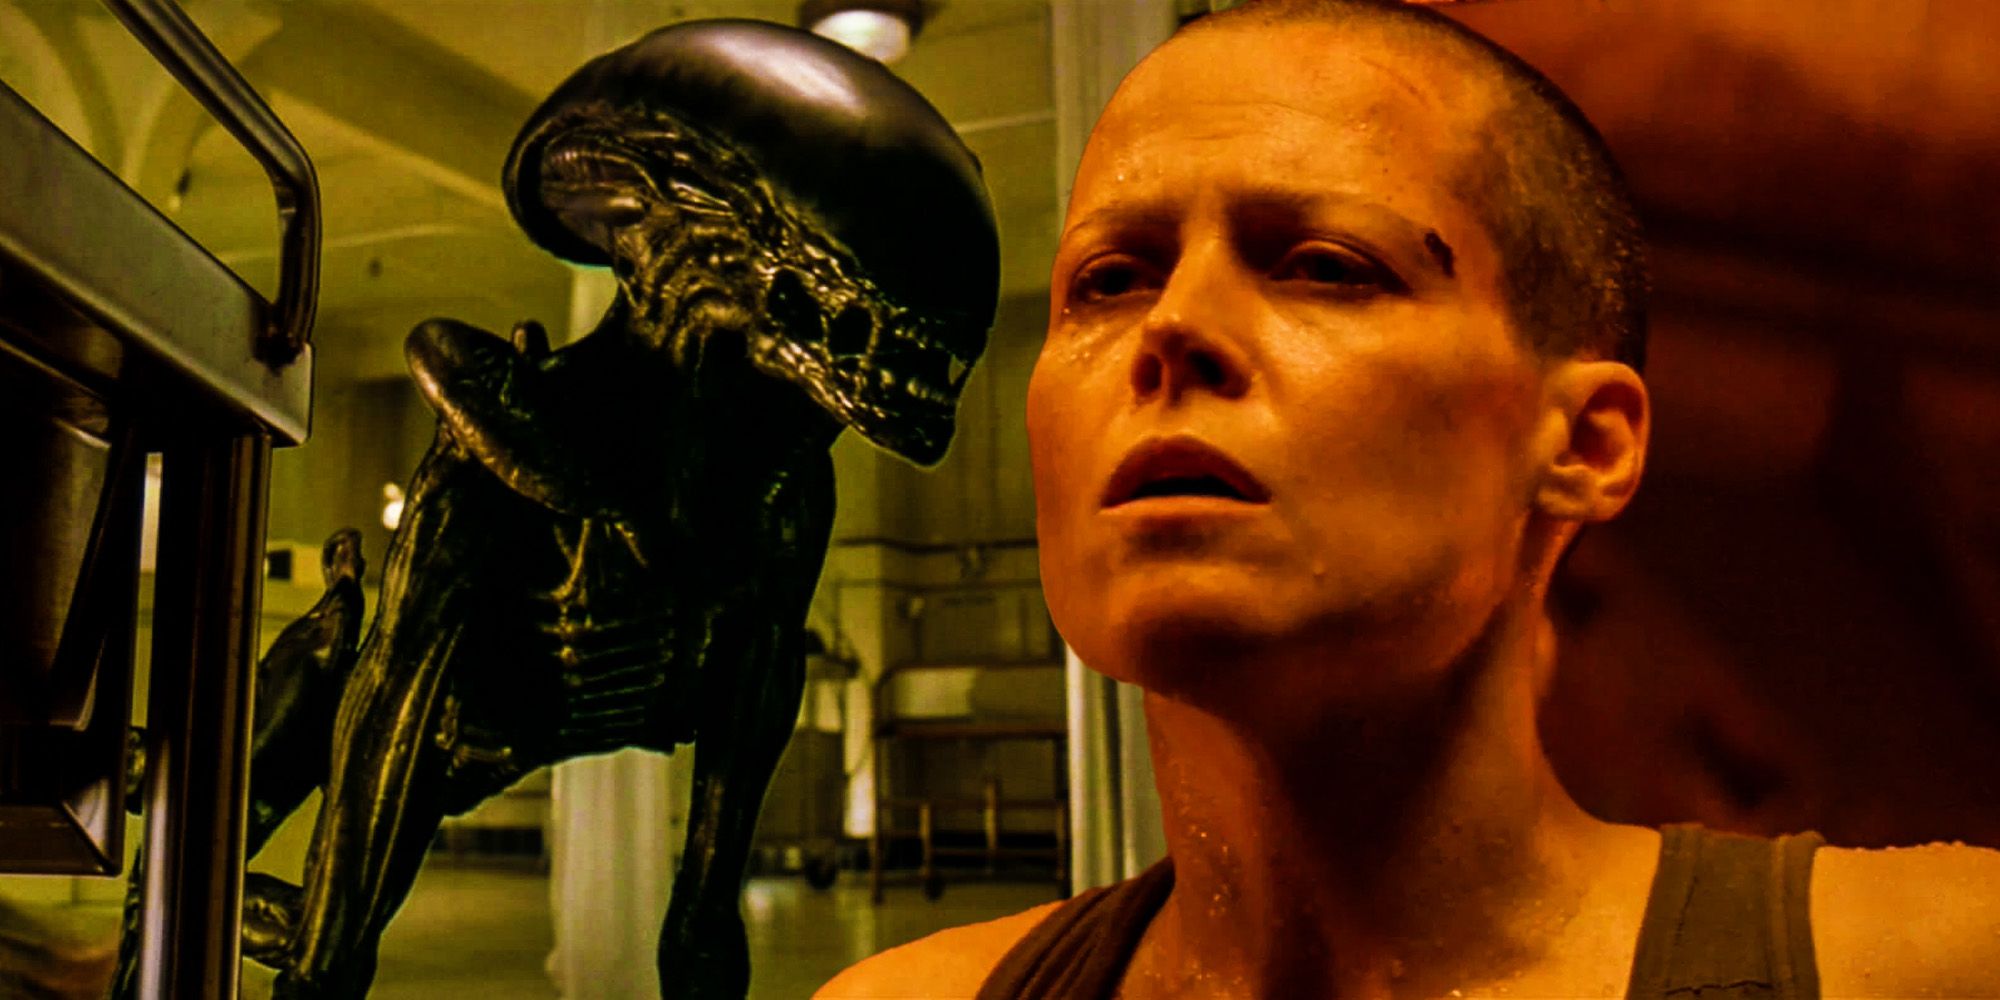 Alien 3 ripley deleted scenes